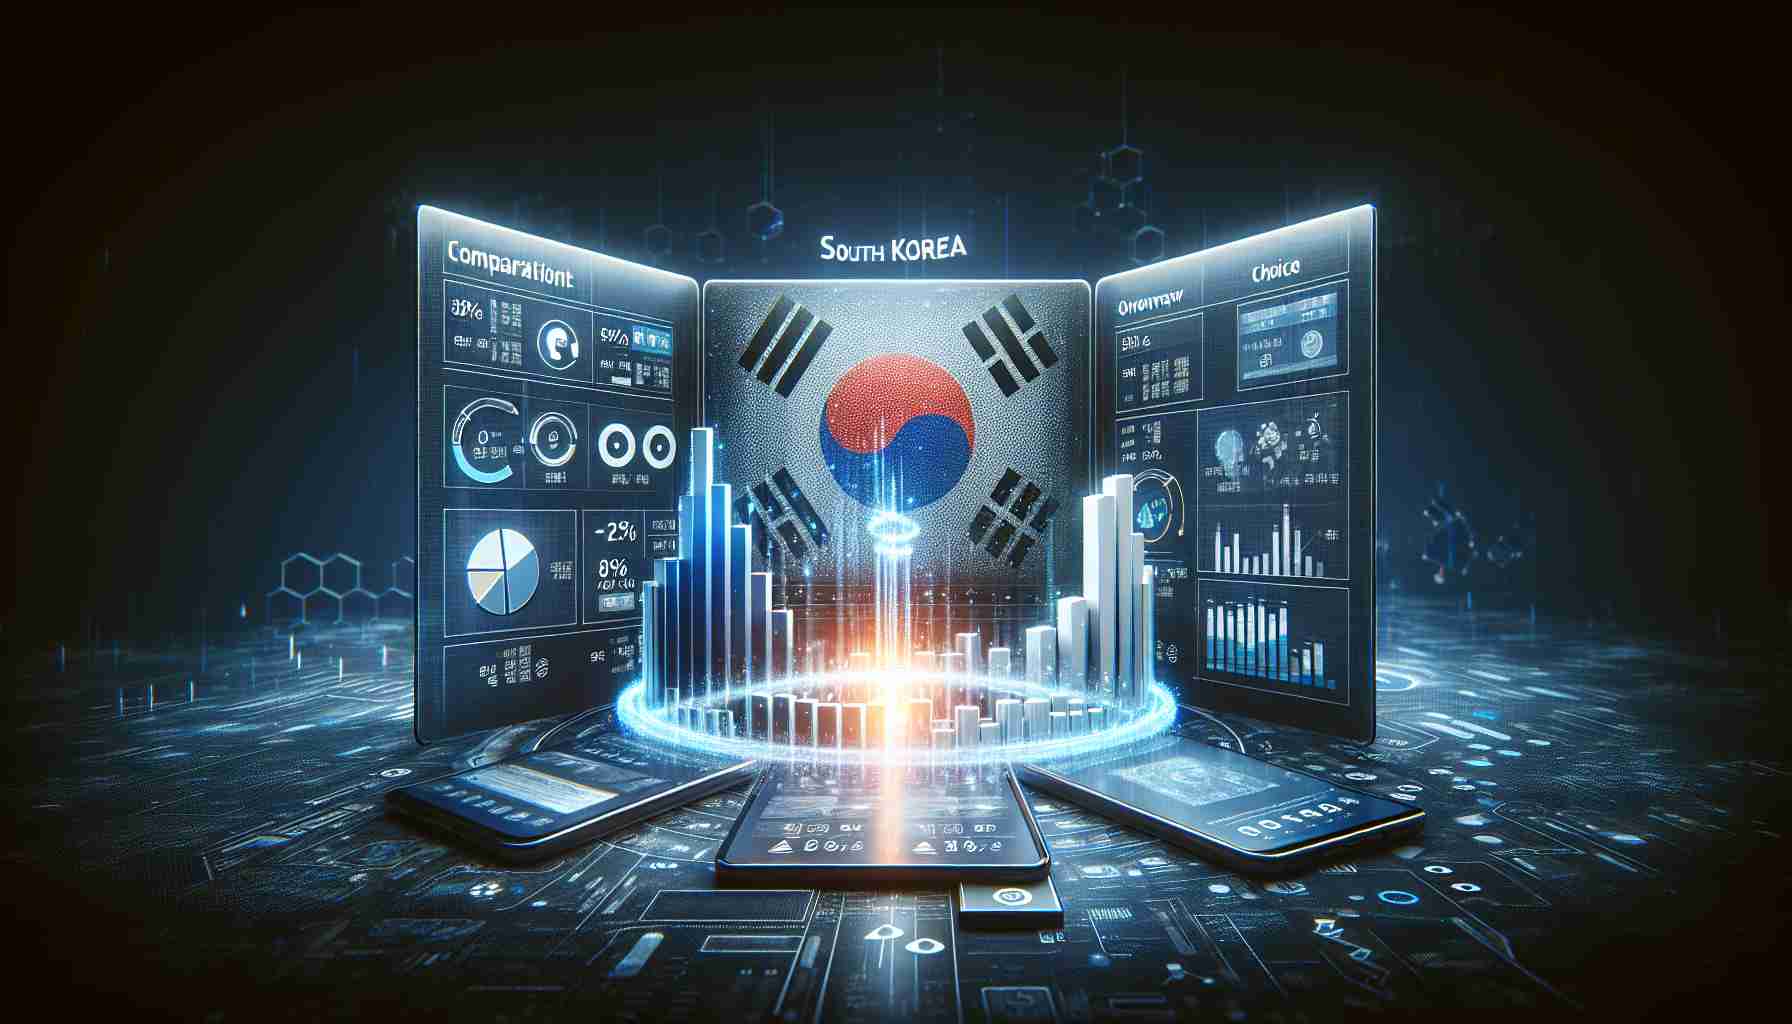 South Korea Enhances Mobile Plan Comparison with Smart Choice Portal Overhaul